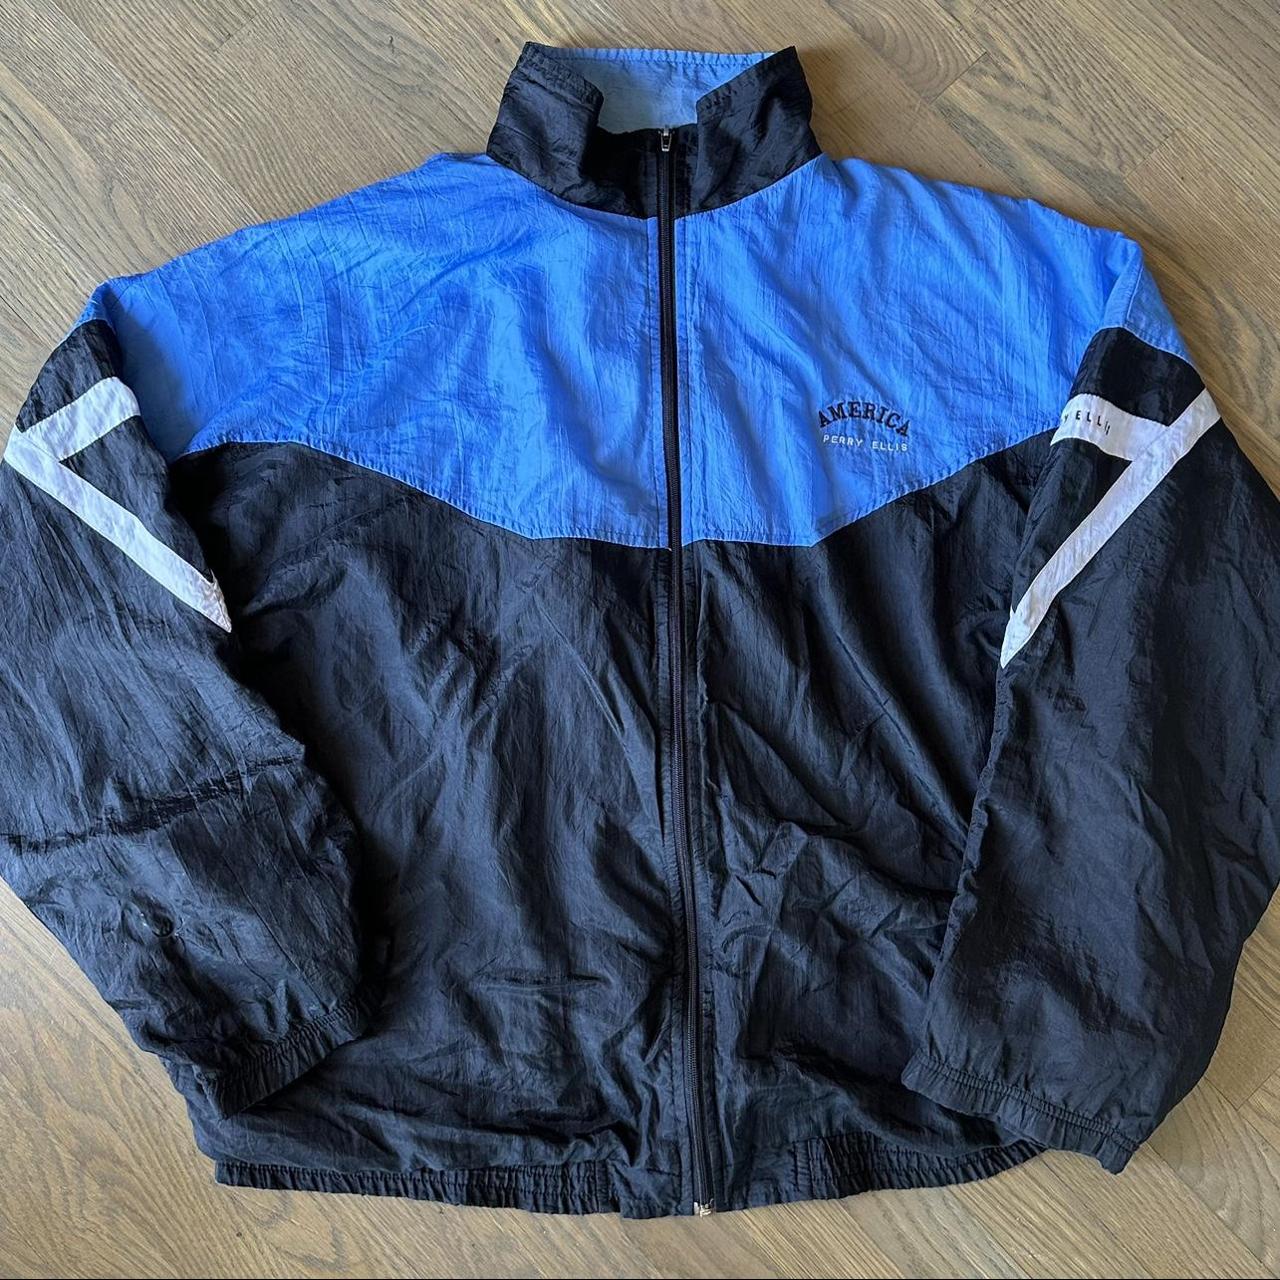 Vintage Perry Ellis windbreaker jacket size XL used... - Depop